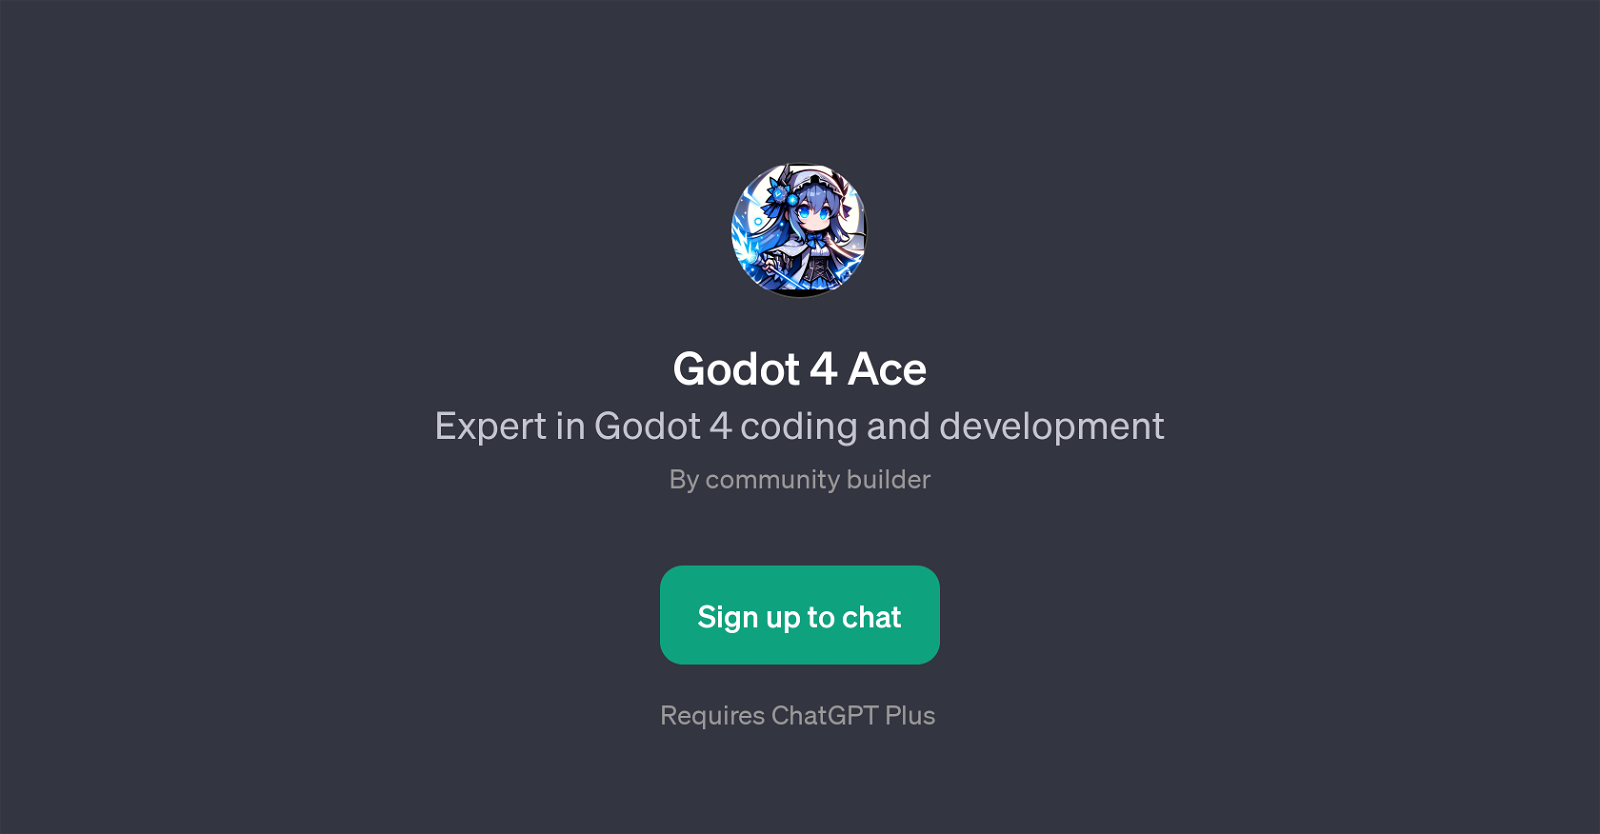 Godot 4 Ace website